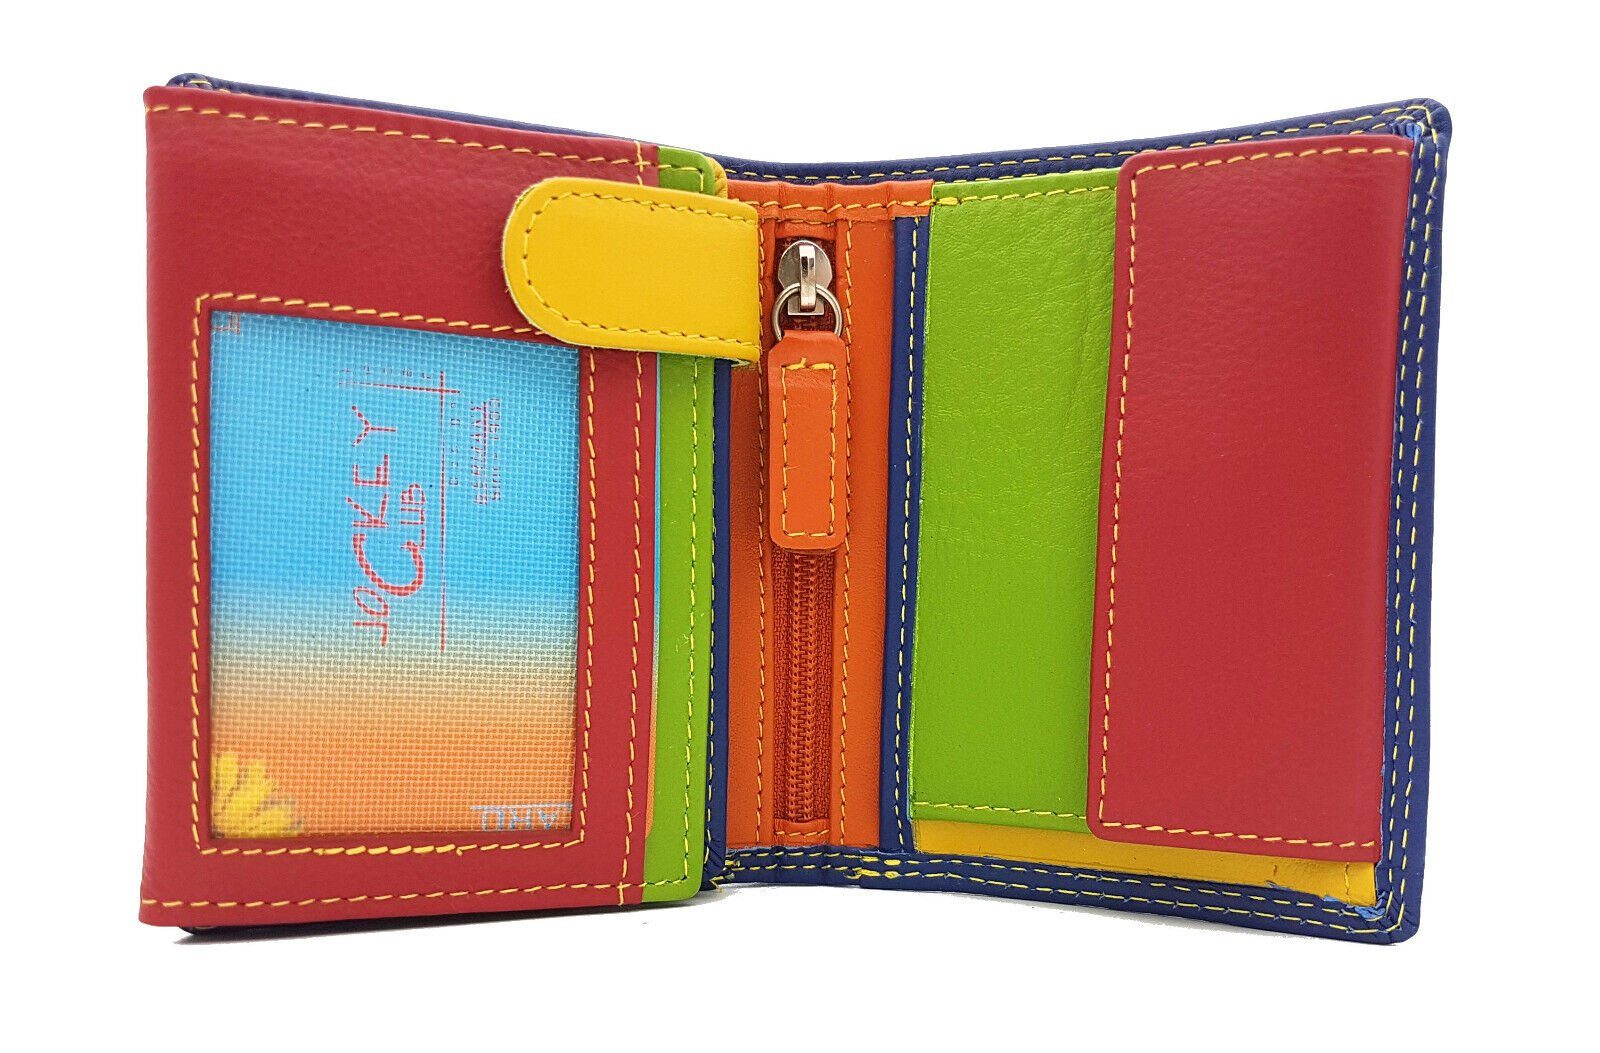 JOCKEY CLUB Mini Geldbörse kleines echt Leder Damen Portemonnaie mit RFID Schutz "Rio", tropische Farben, handliches Format blau